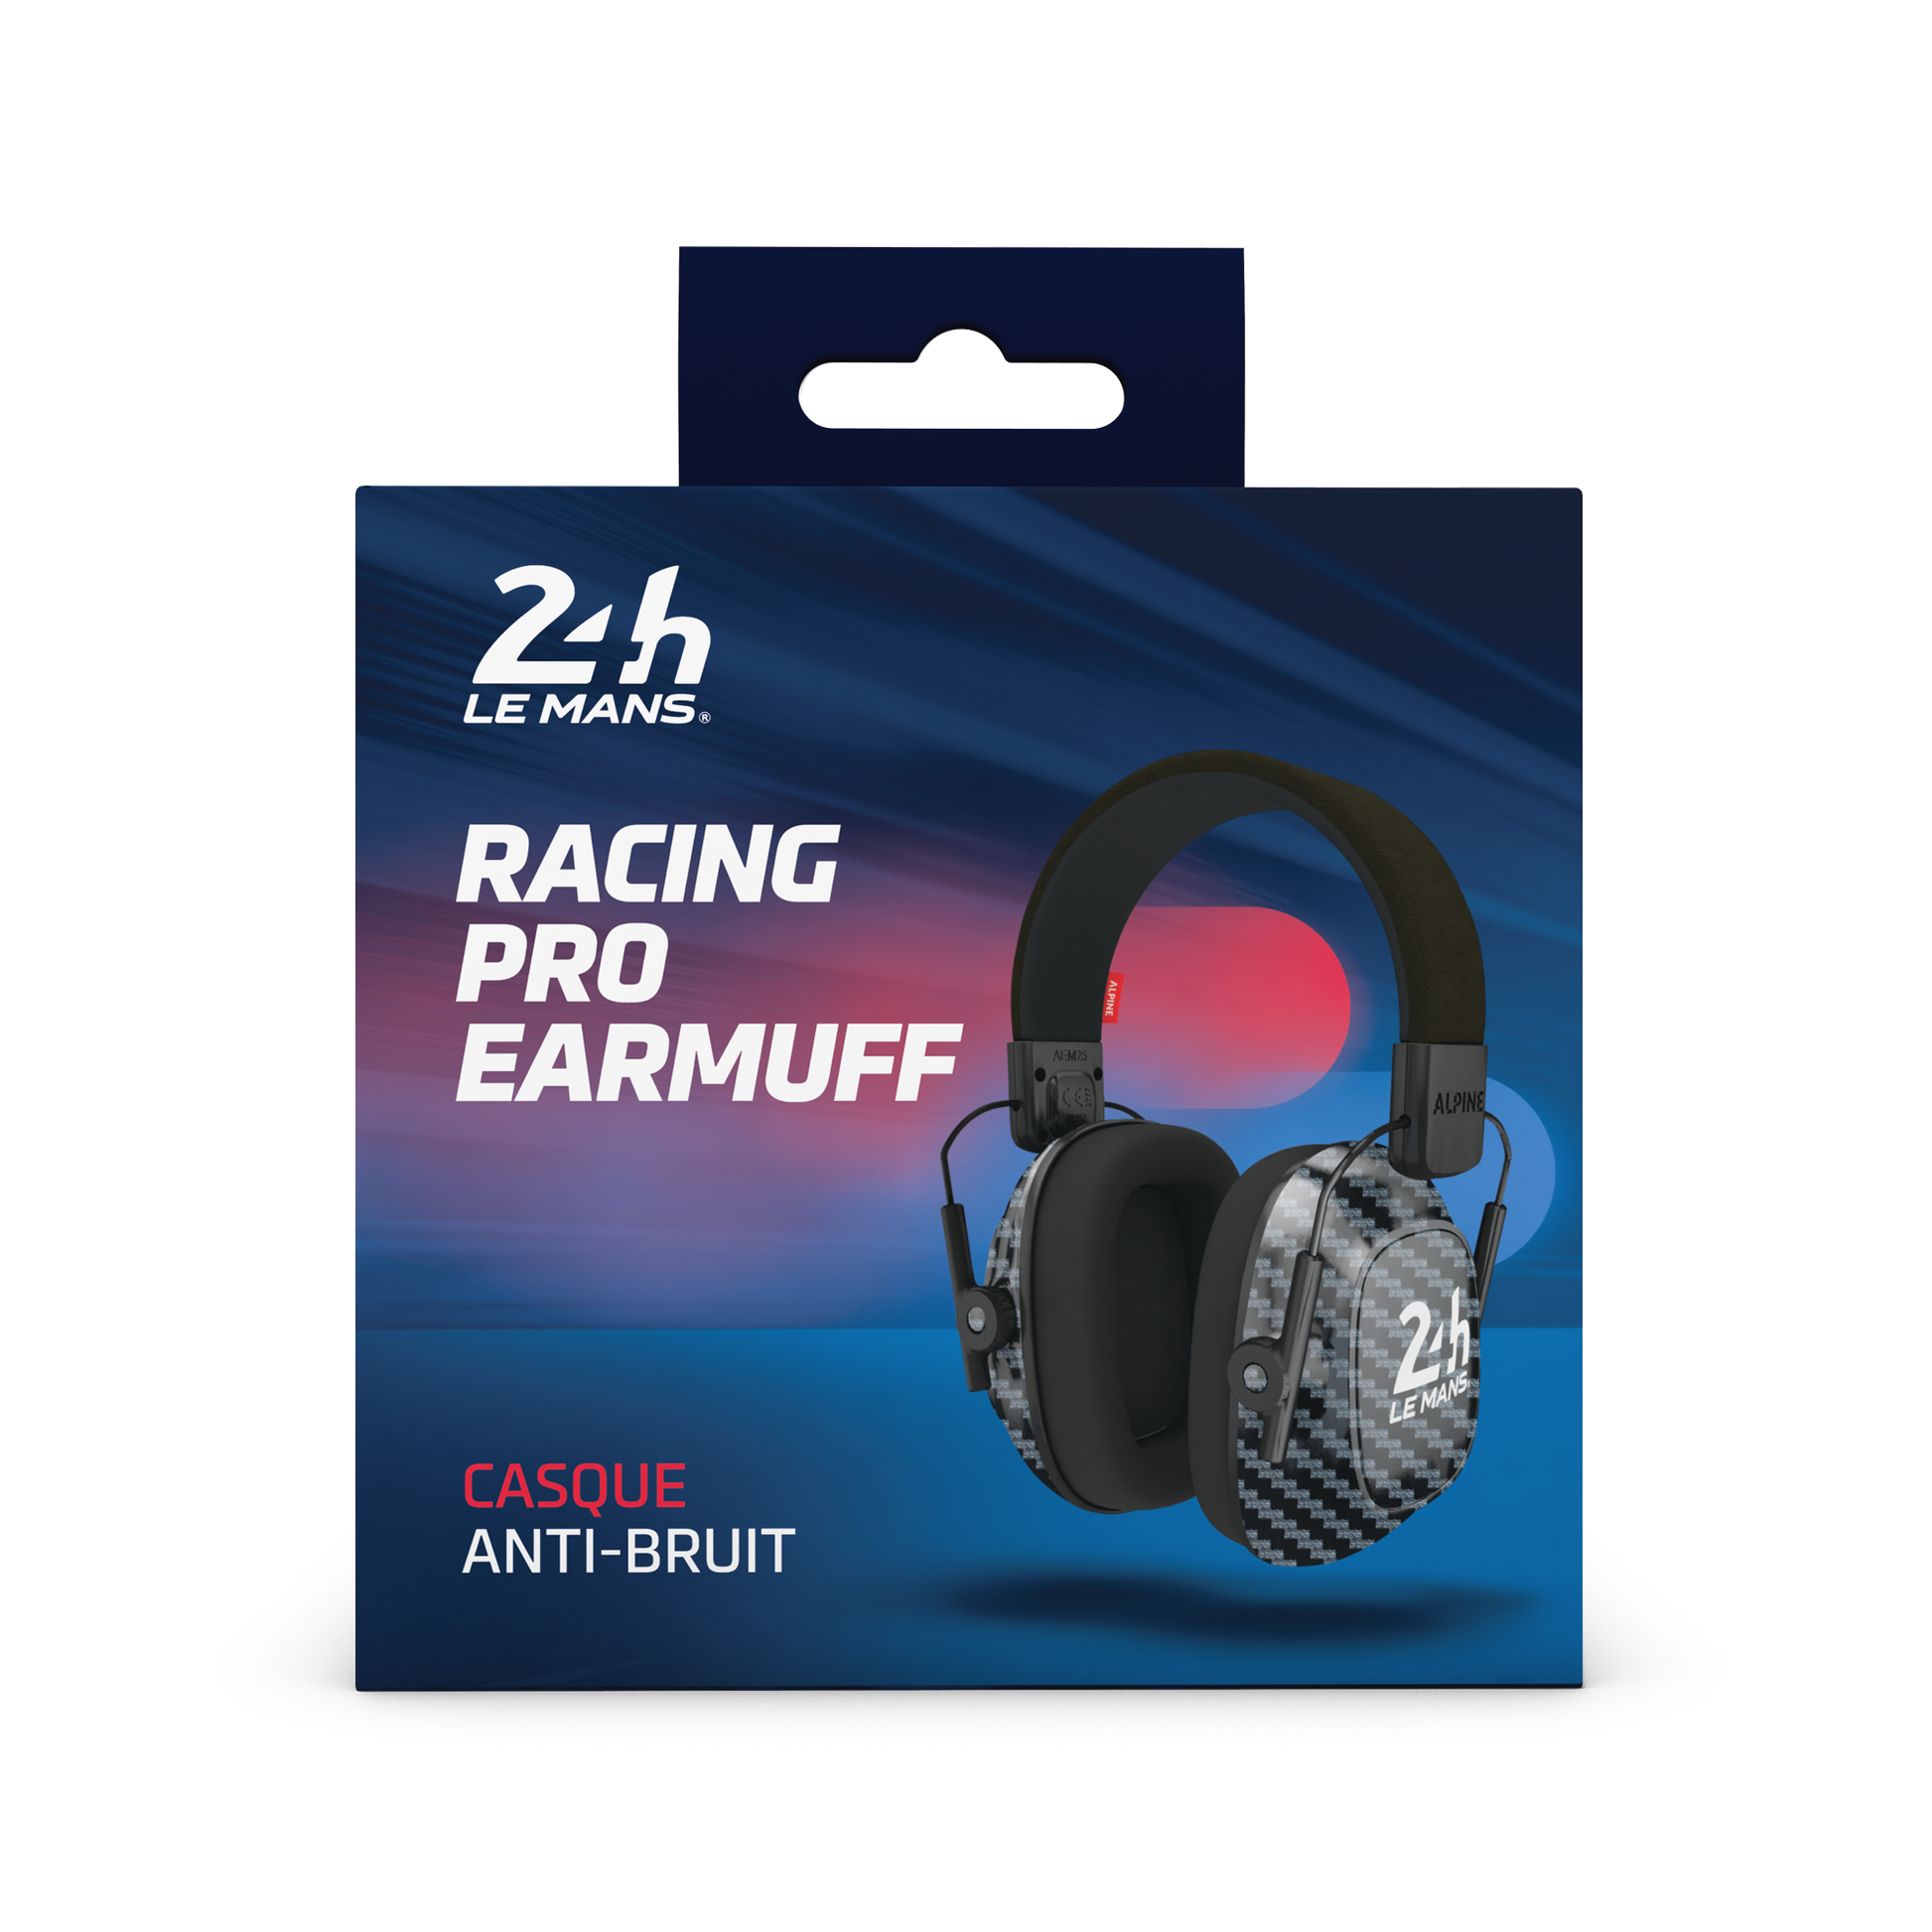 Casque antibruit Racing Pro 24H Le Mans Alpine Protection Auditive Bouchons d’oreilles Casque anti-bruit red dot award protéger votre oreille  Formula1 MotoGP 24h le mans 